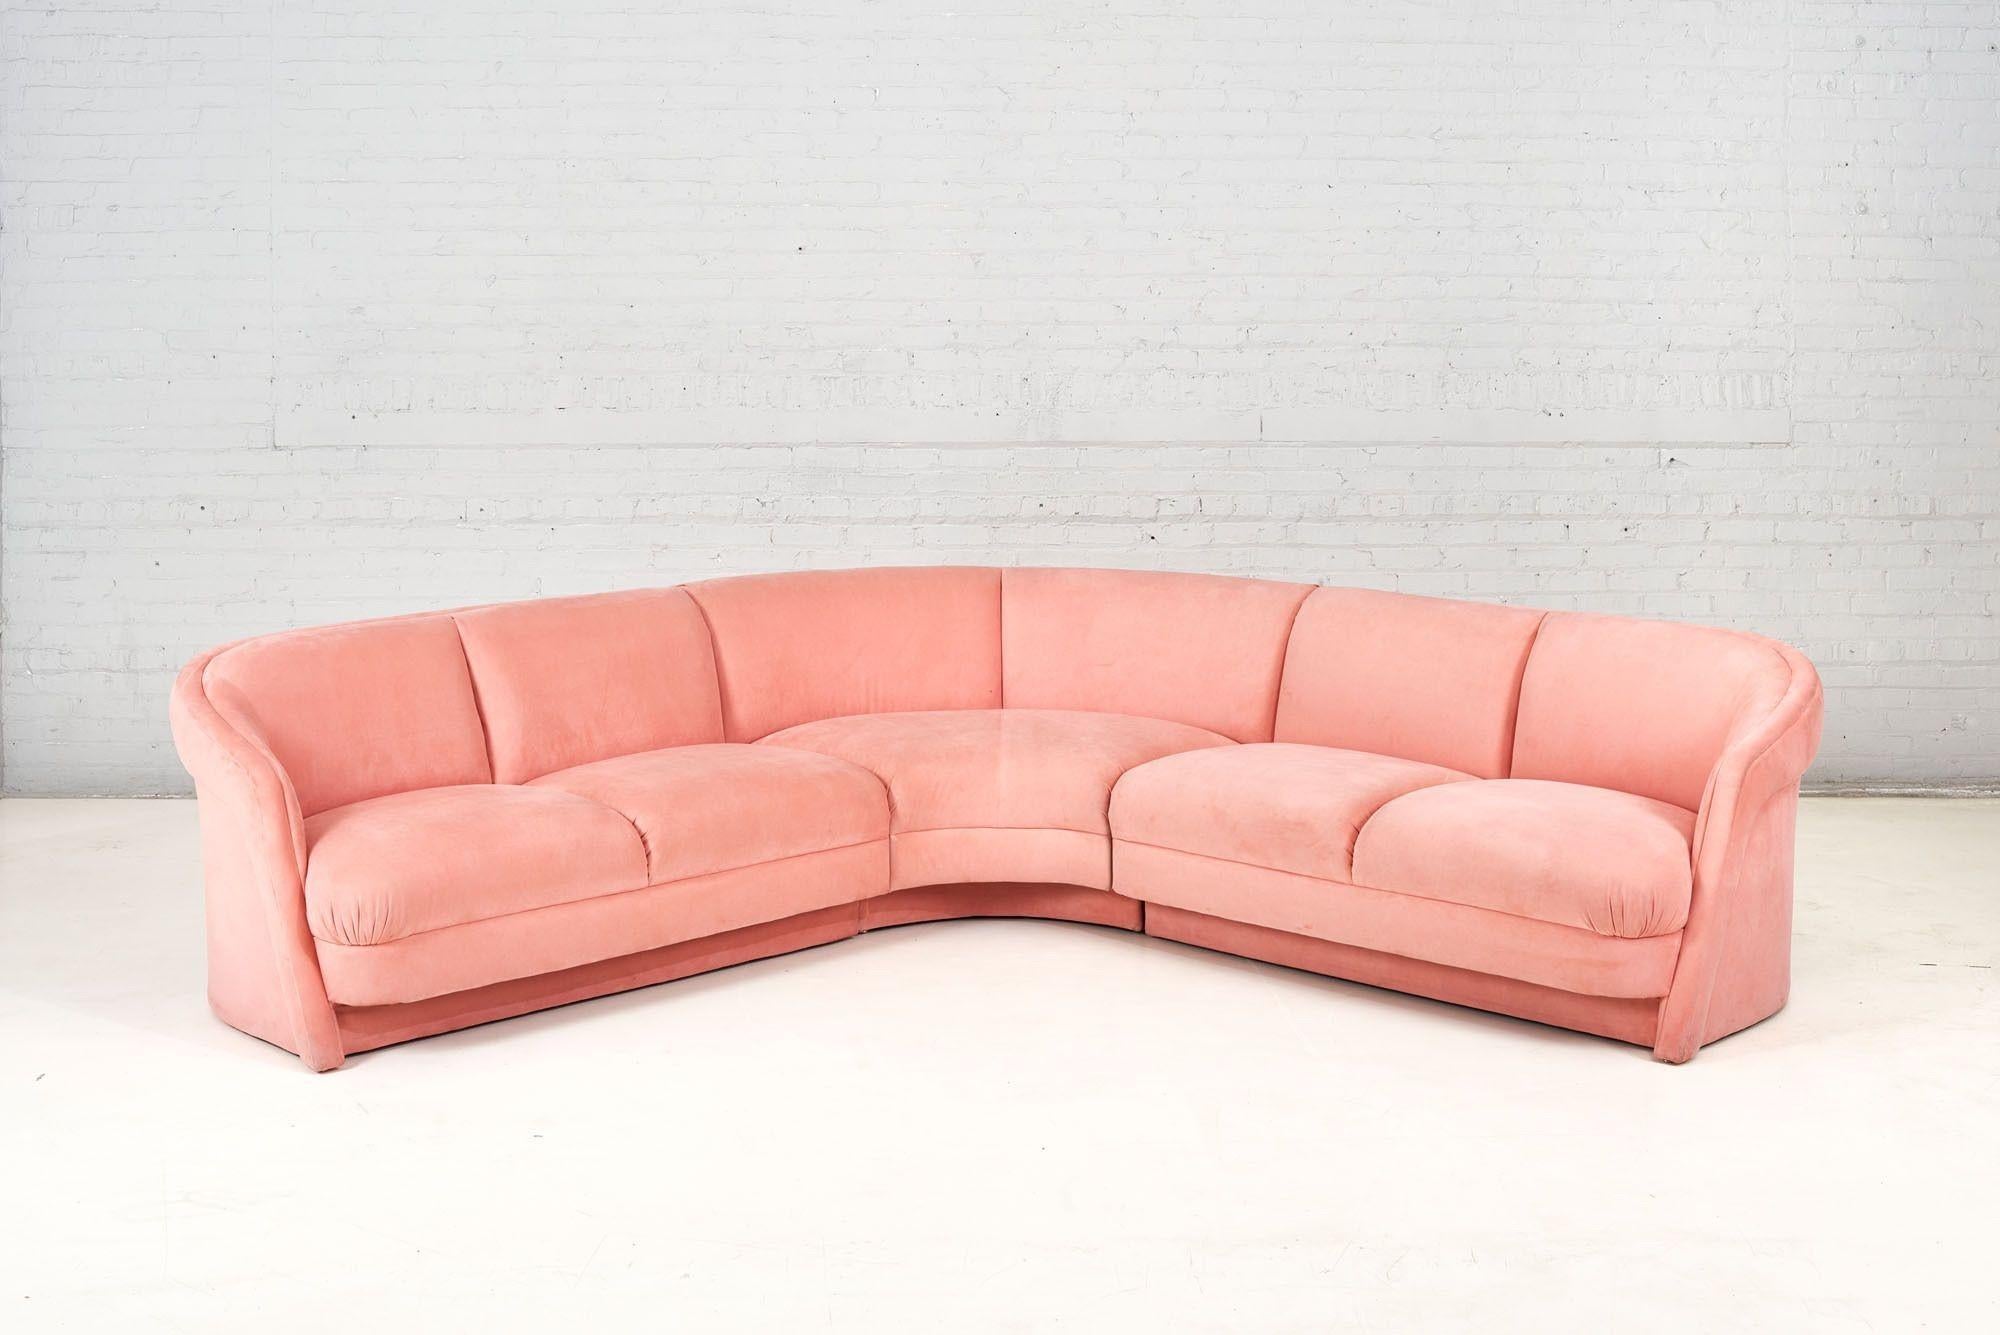 Canapé sectionnel postmoderne rose dans le style de Milo Baughman pour Thayer-Coggin 1980. Tapisserie d'origine.